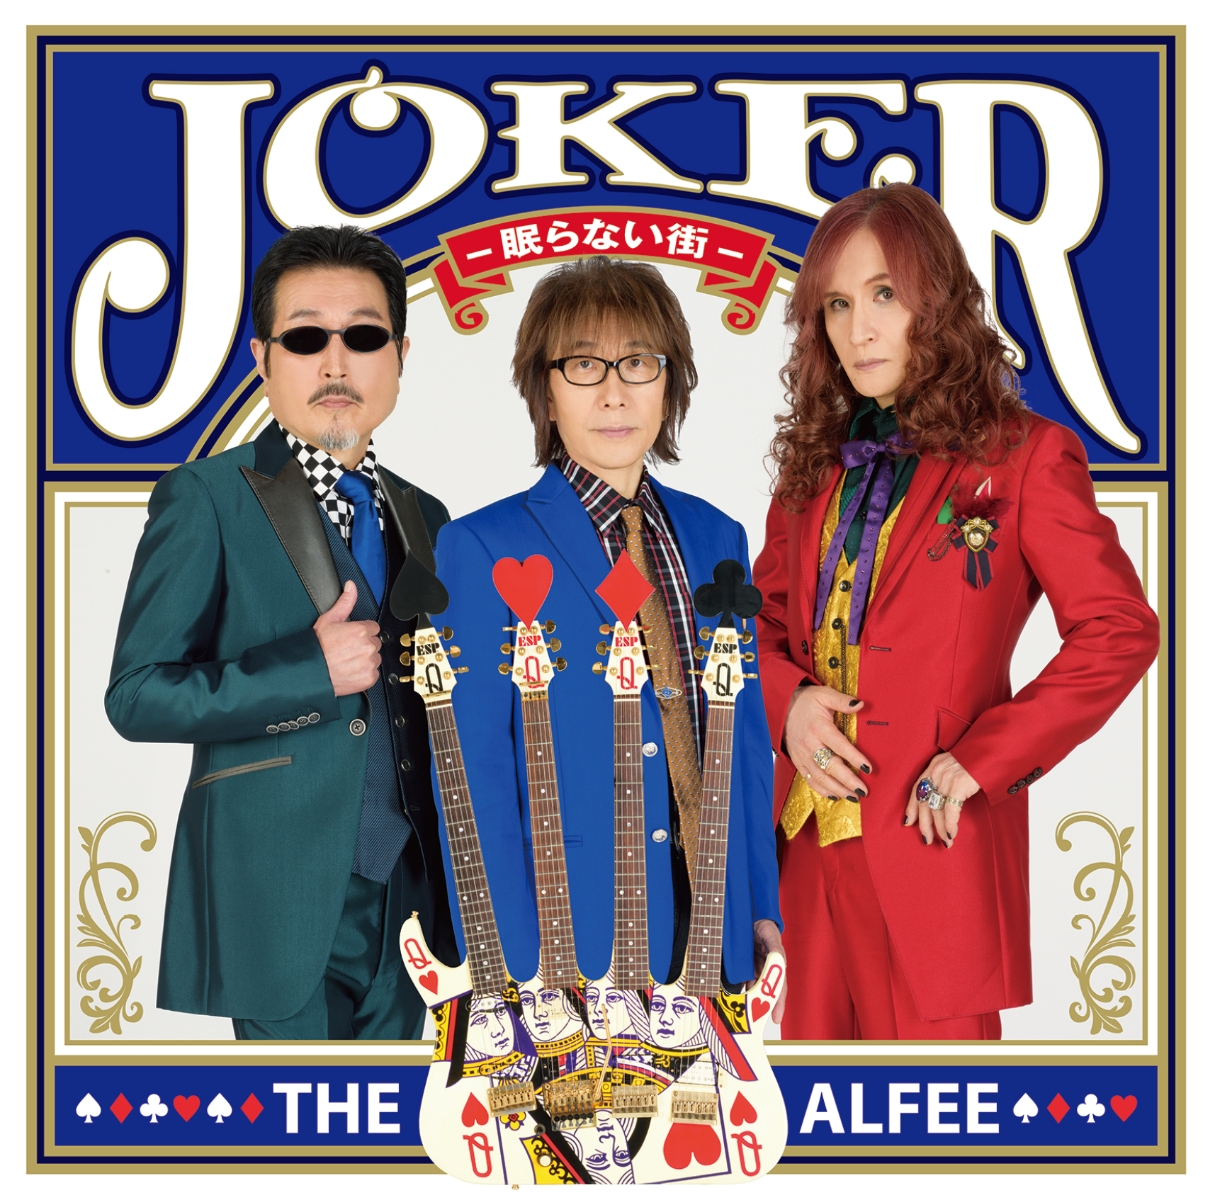 楽天ブックス: Joker -眠らない街ー (初回限定盤C) - THE ALFEE 